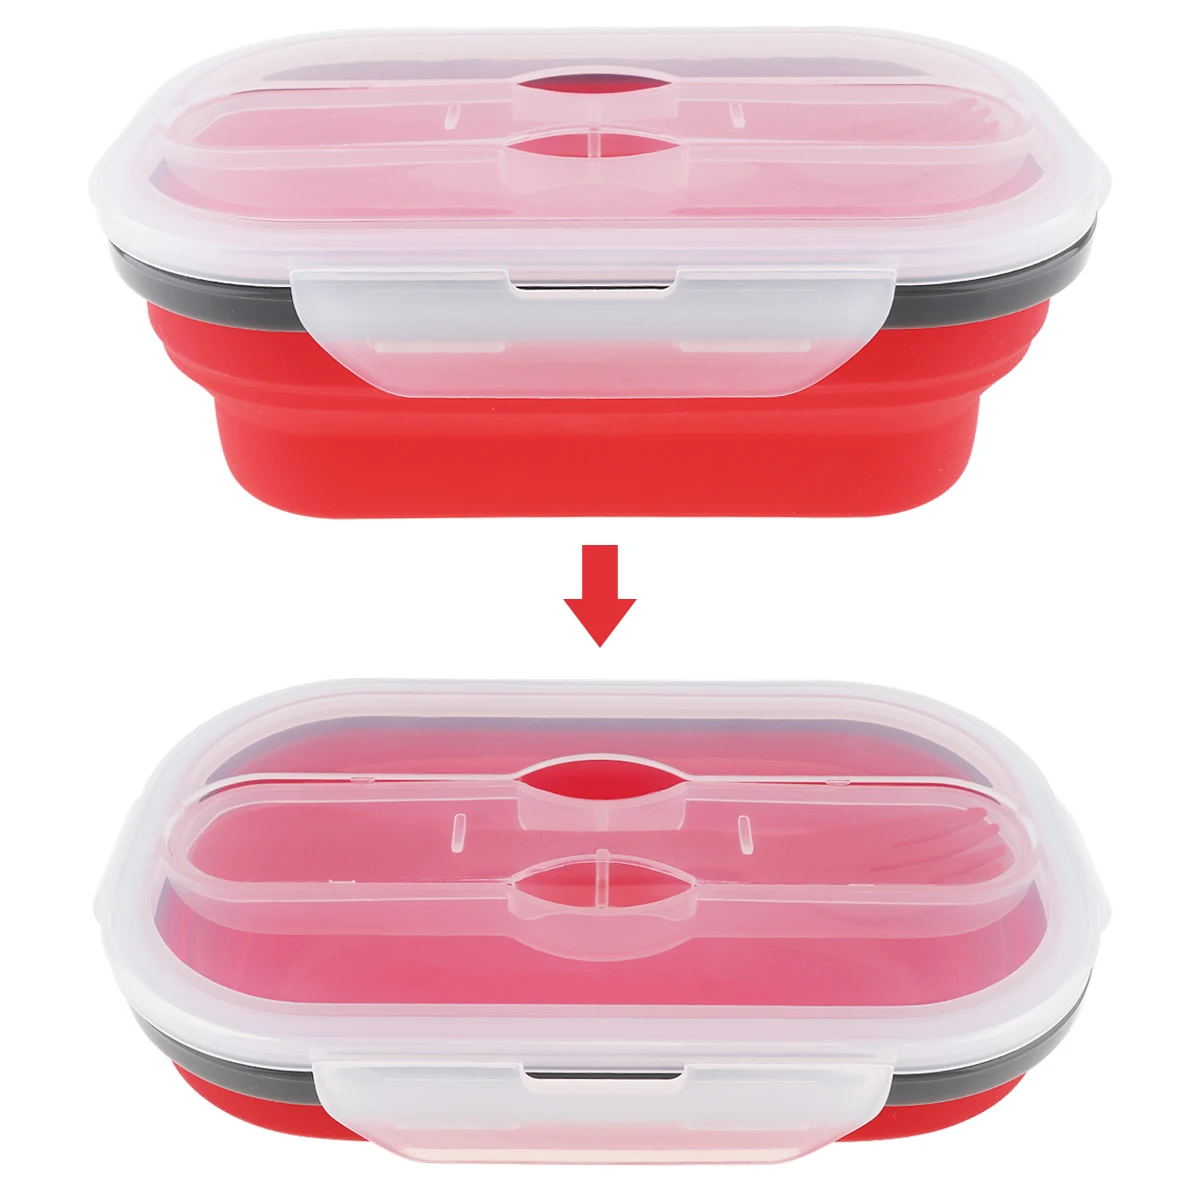 4 цвета силикона 800 мл масштабируемый складной Ланчбокс Bento Box с уплотненной пряжкой карты и три назначения посуда